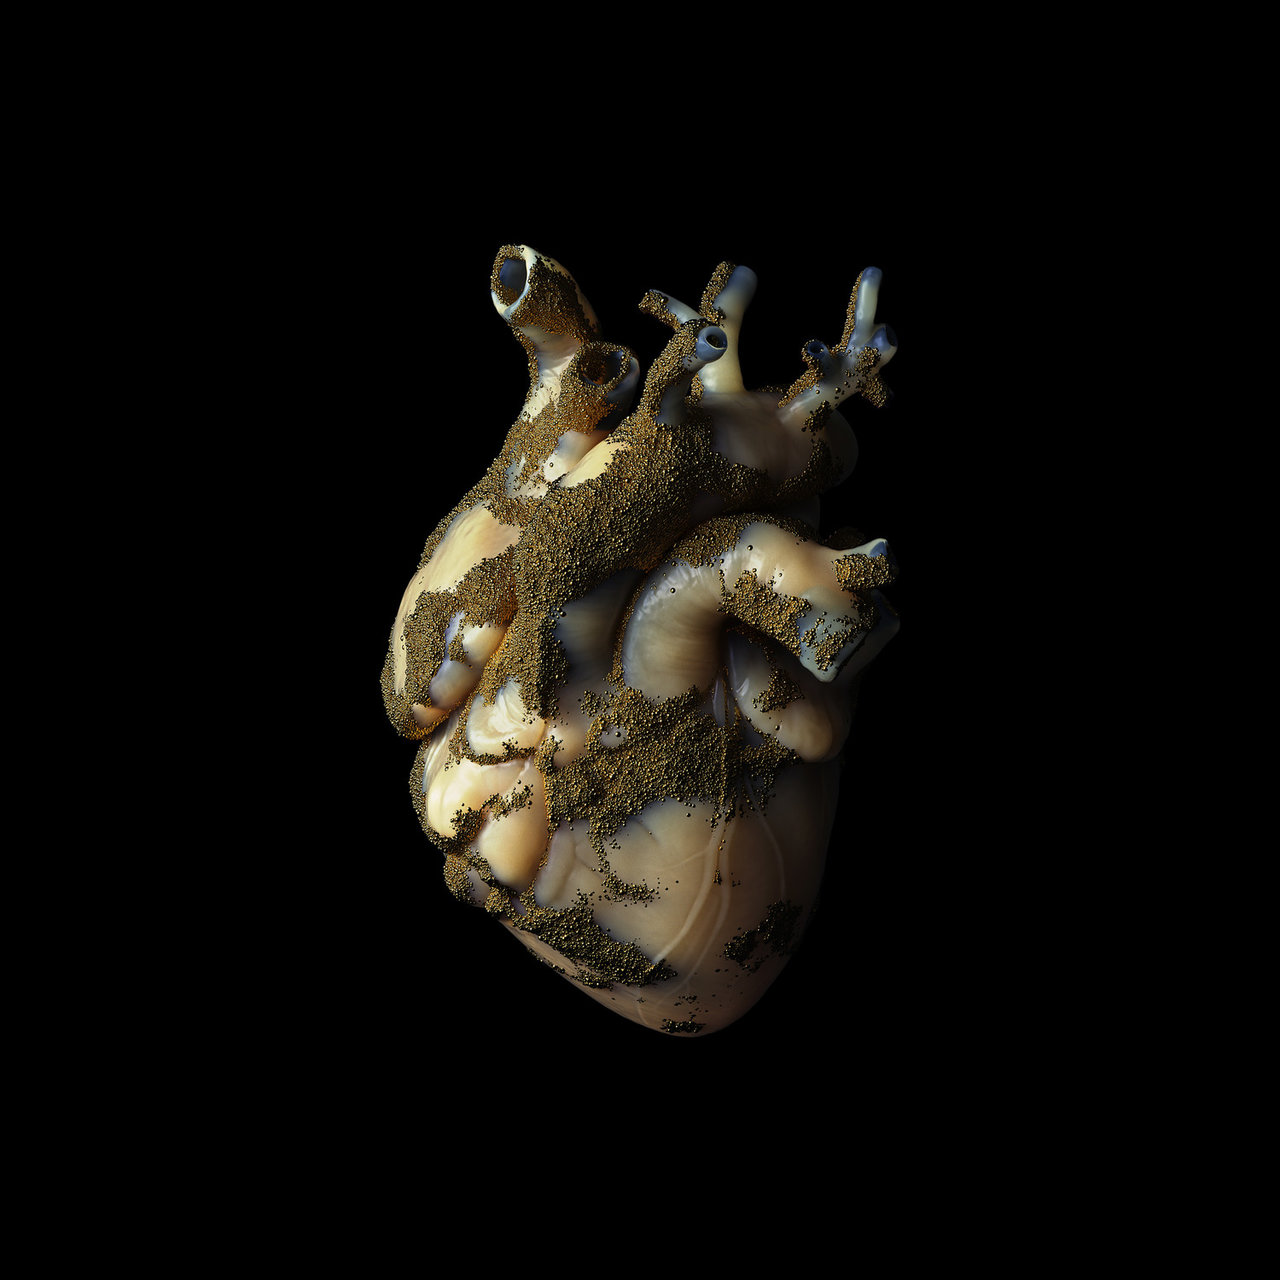 Highasakite Uranium Heart cover artwork